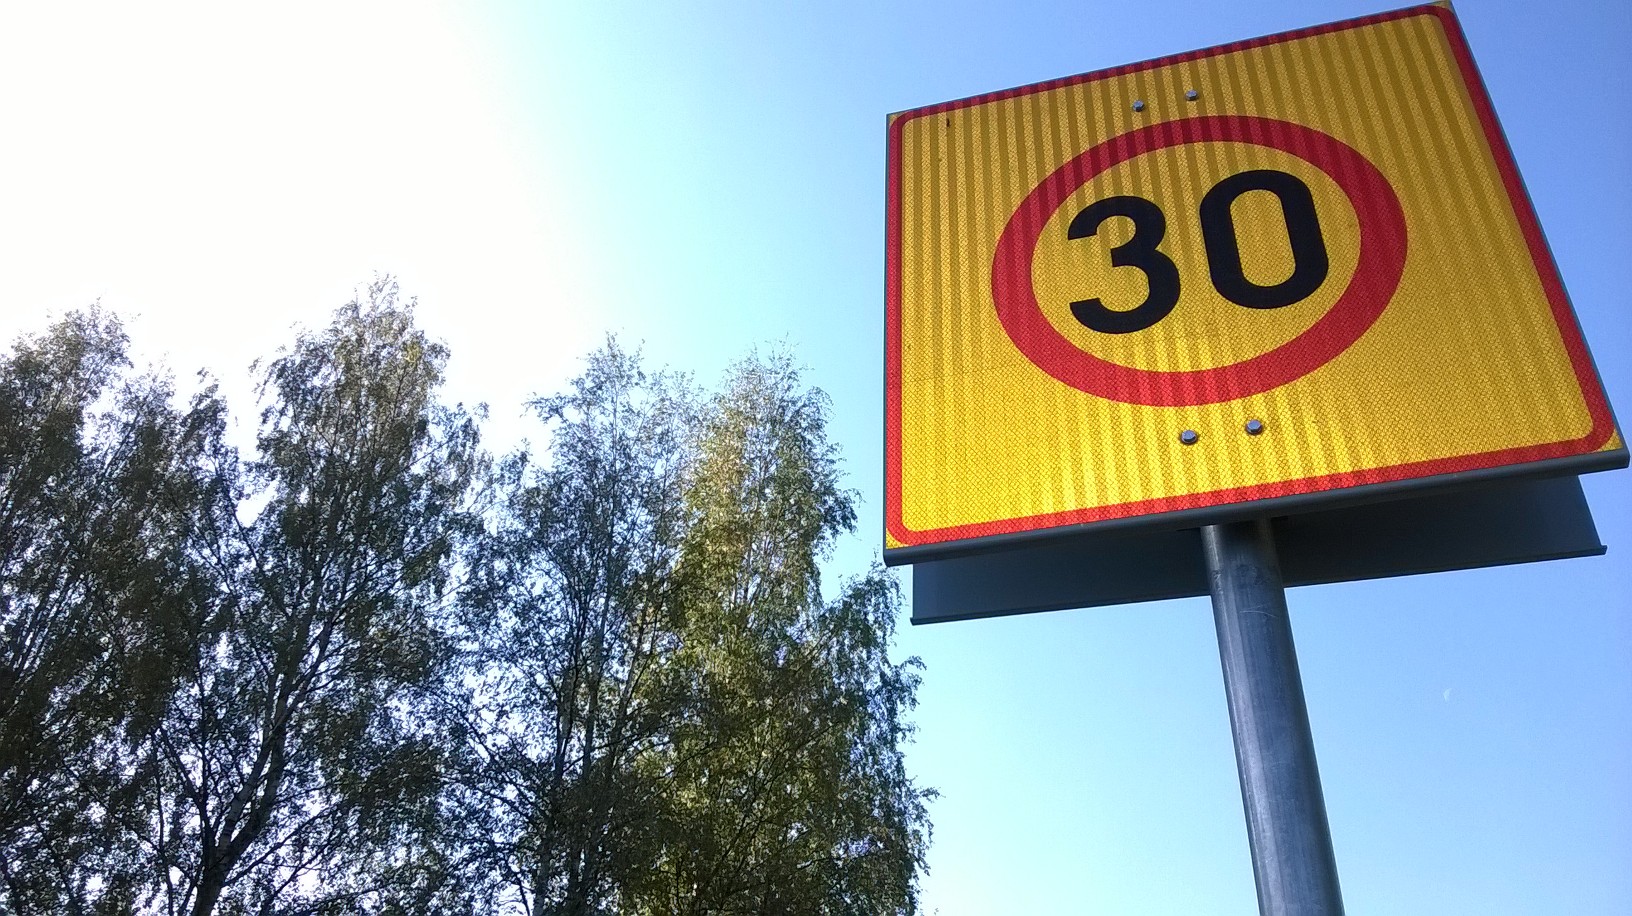 تدعو وكالة السلامة الفنلندية إلى زيادة حدود السرعة بمقدار 30 كم / ساعة على الطرق الفنلندية